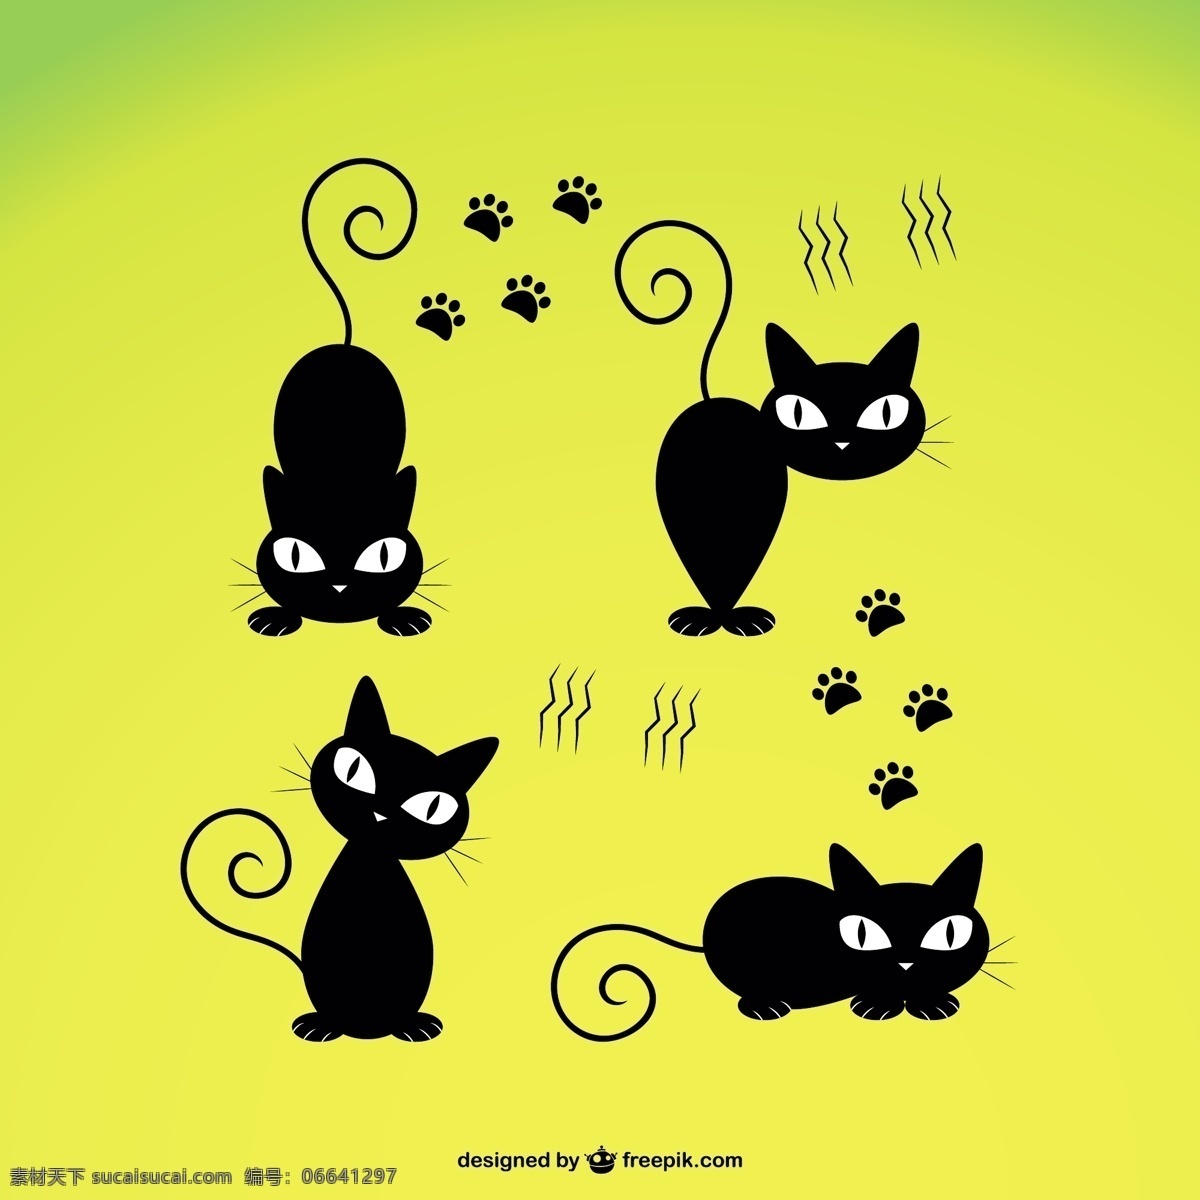 可爱的黑猫 模板 猫 动物 卡通 人物 可爱 图形 轮廓 布局 符号 图形设计 黑色 宠物 形状 卡通人物 插图 设计元素 黄色